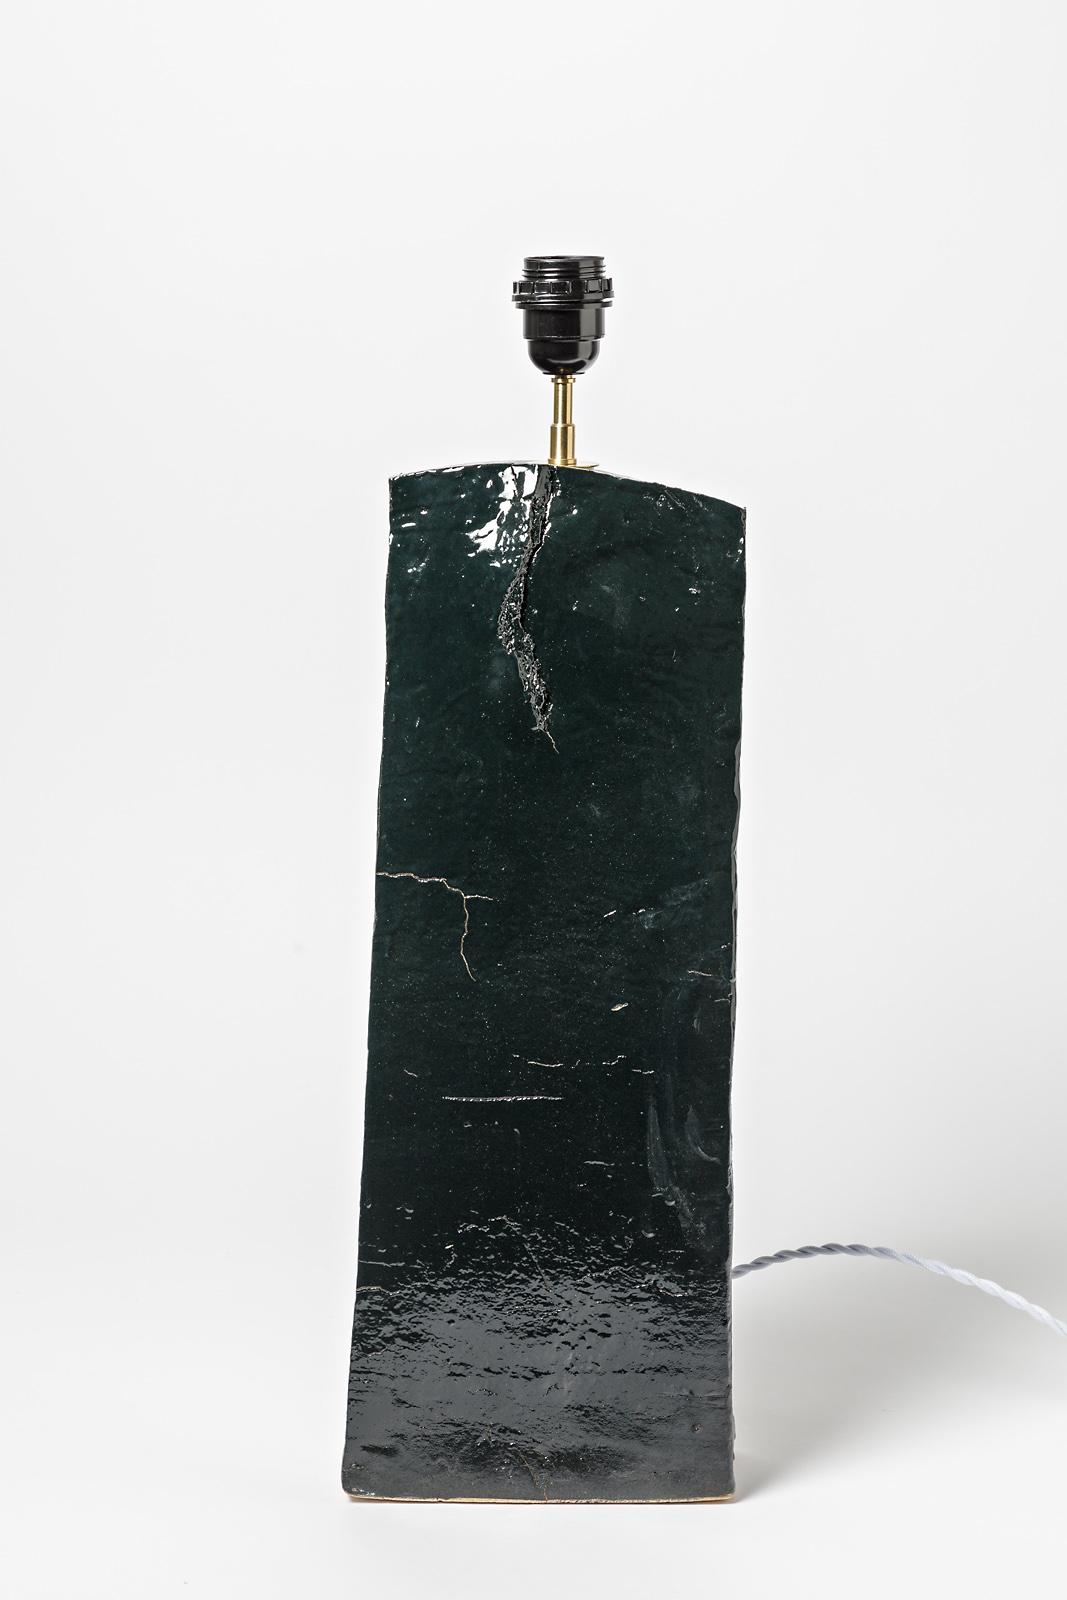 Einzigartiges Stück

Große Keramik-Tischlampe aus Steingut

Realisiert um 1980

Dunkelgrünes oder schwarzes Steinzeug aus Keramik

Original perfekter Zustand

Elektrische Anlage ist neu - verkauft ohne Lampenschirm

Keramik Maße - Höhe